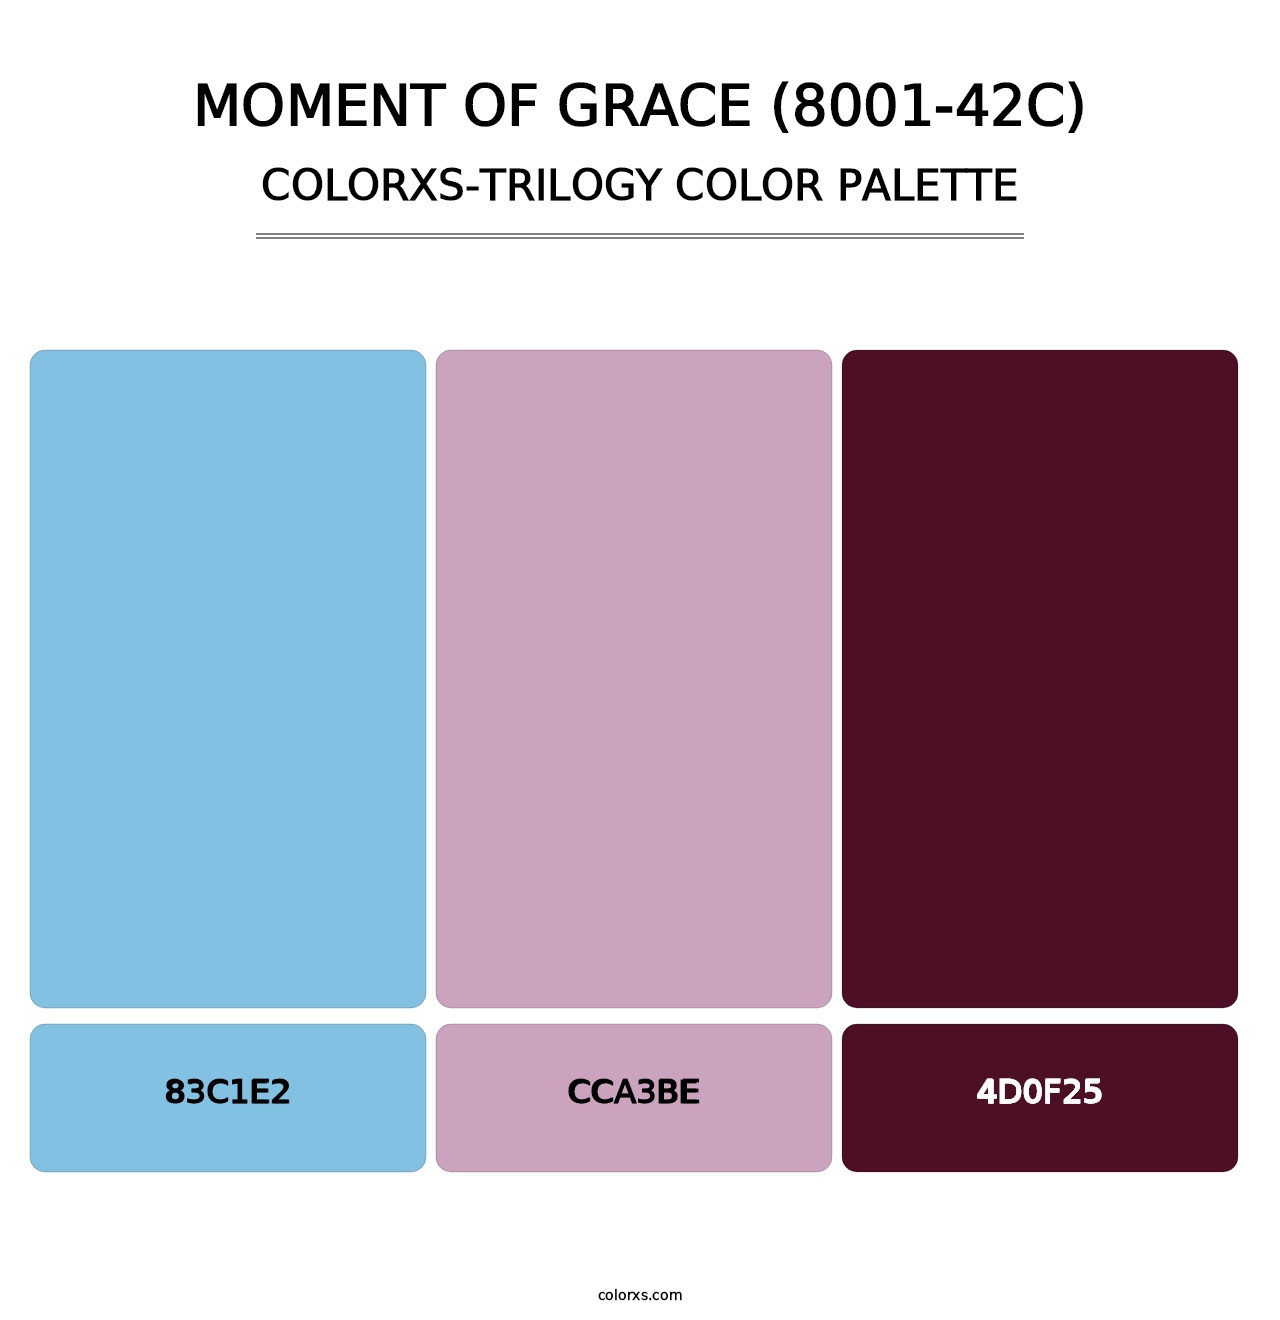 Moment of Grace (8001-42C) - Colorxs Trilogy Palette